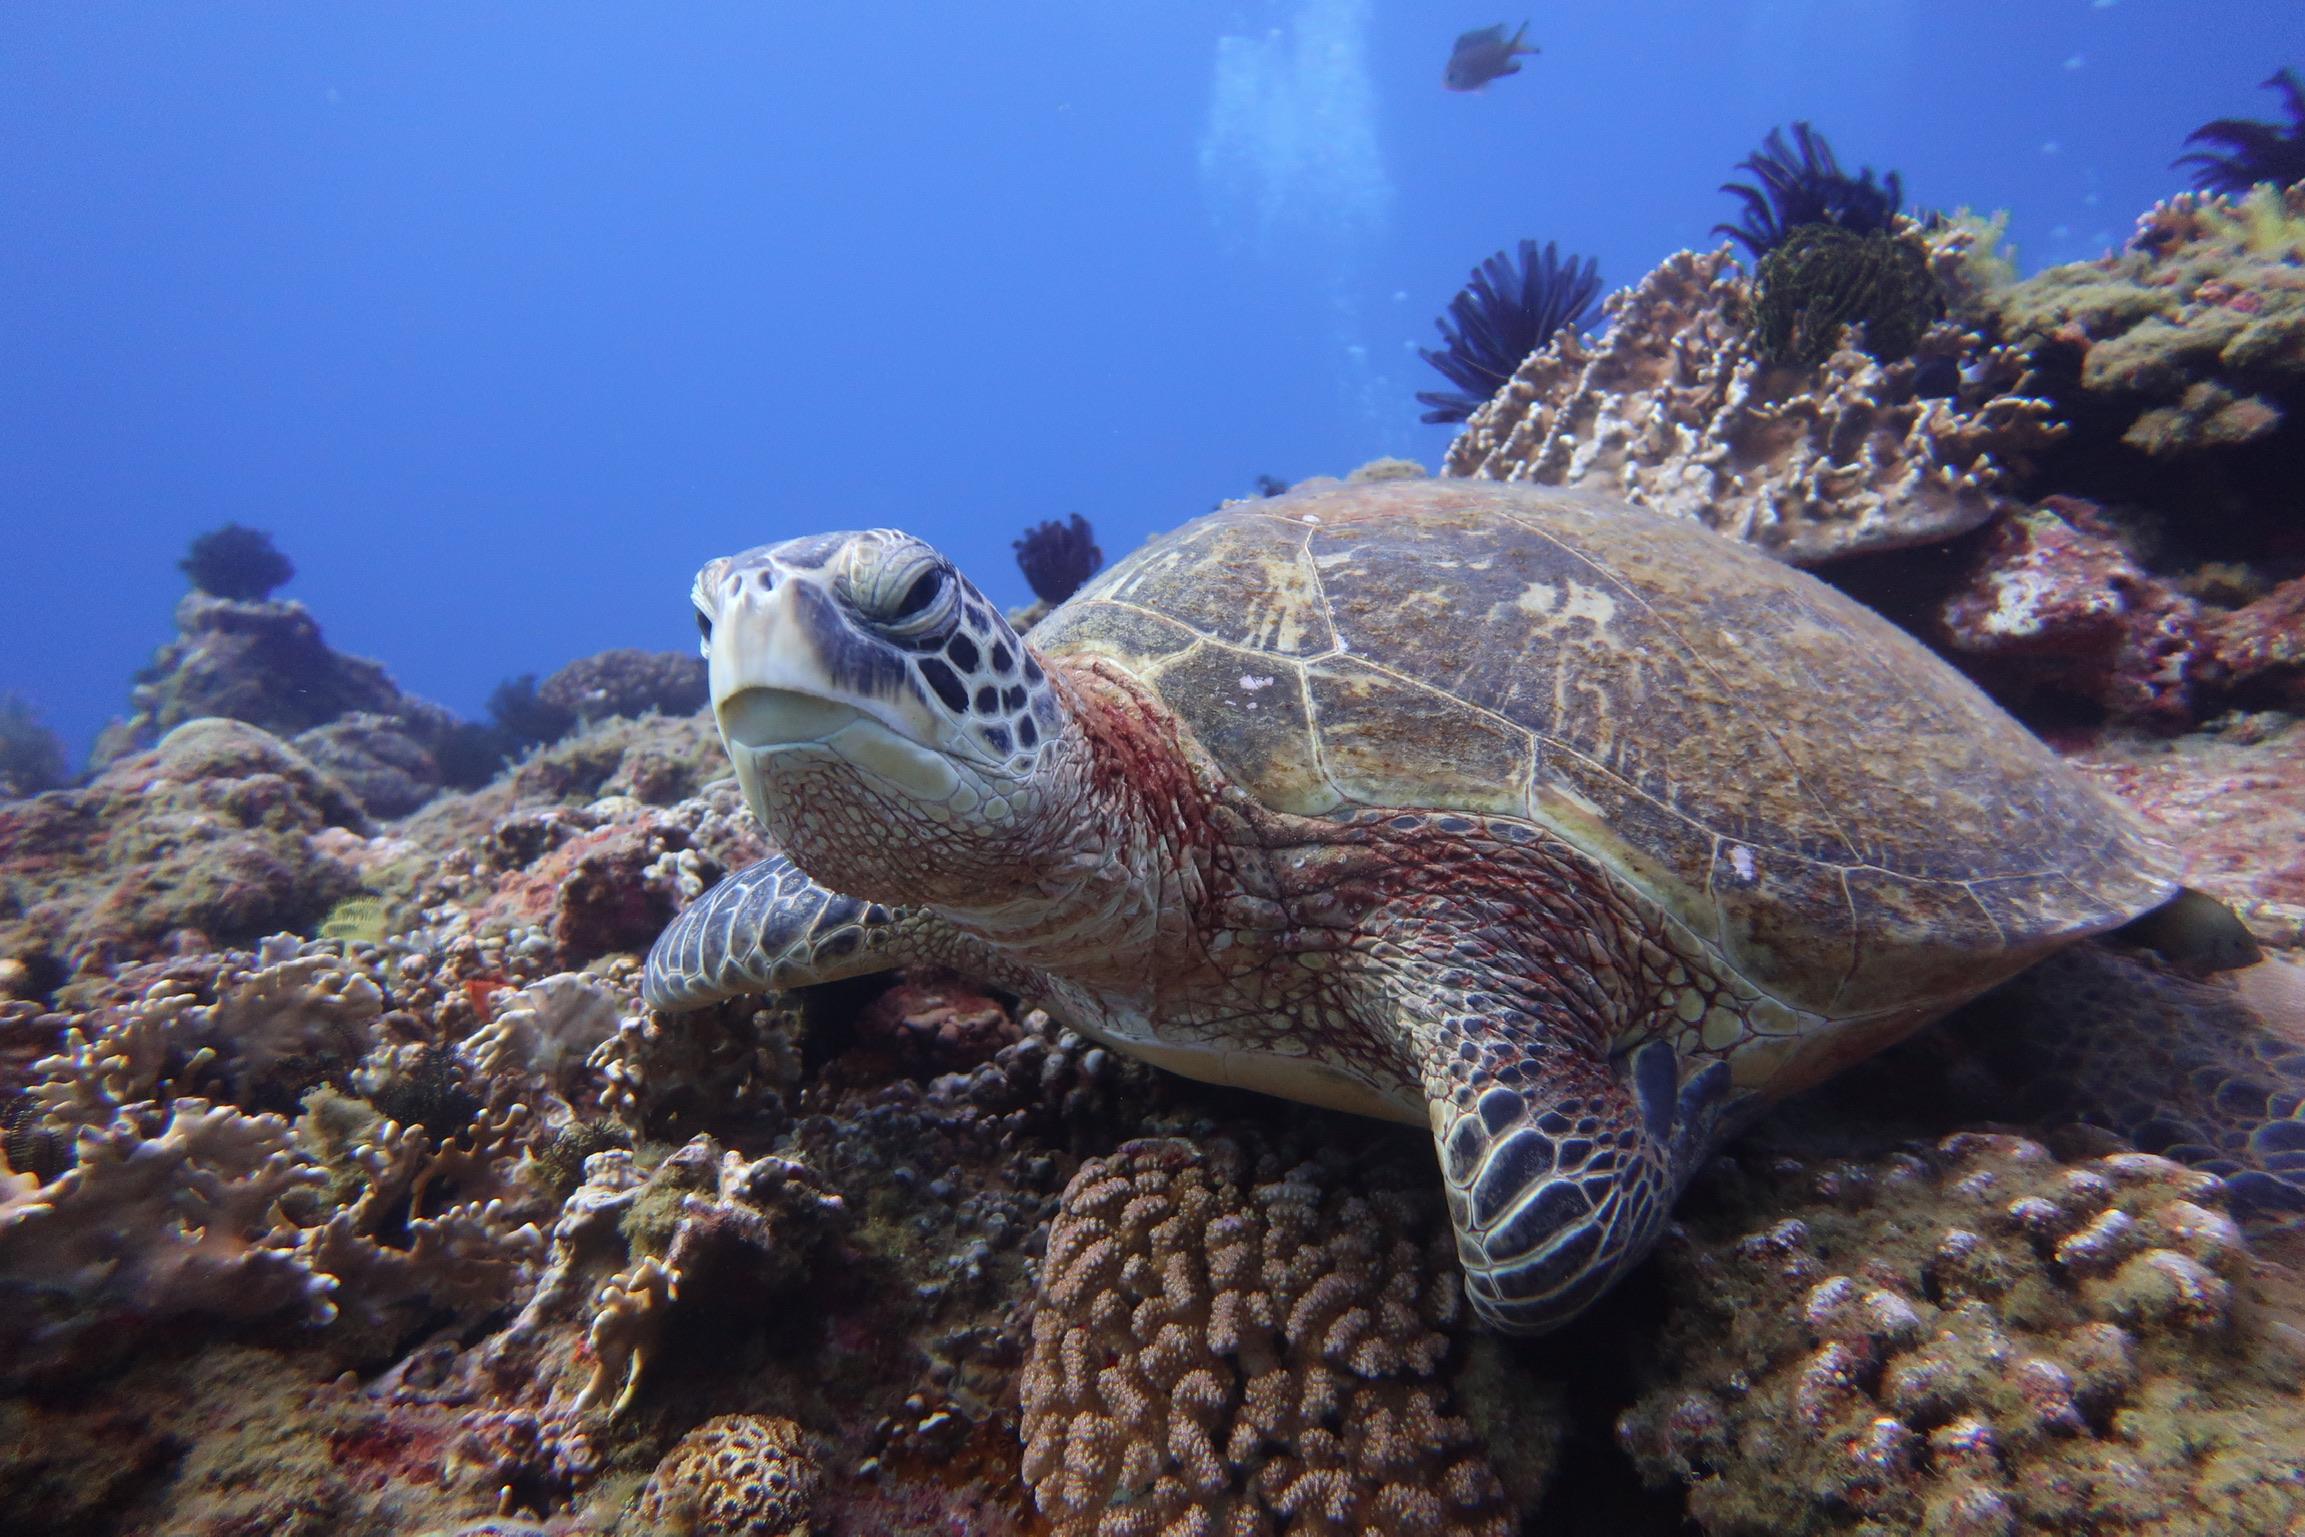 海龜為保護類動物，進行潛水活動時請勿觸摸。就讓我們一同靜靜欣賞。